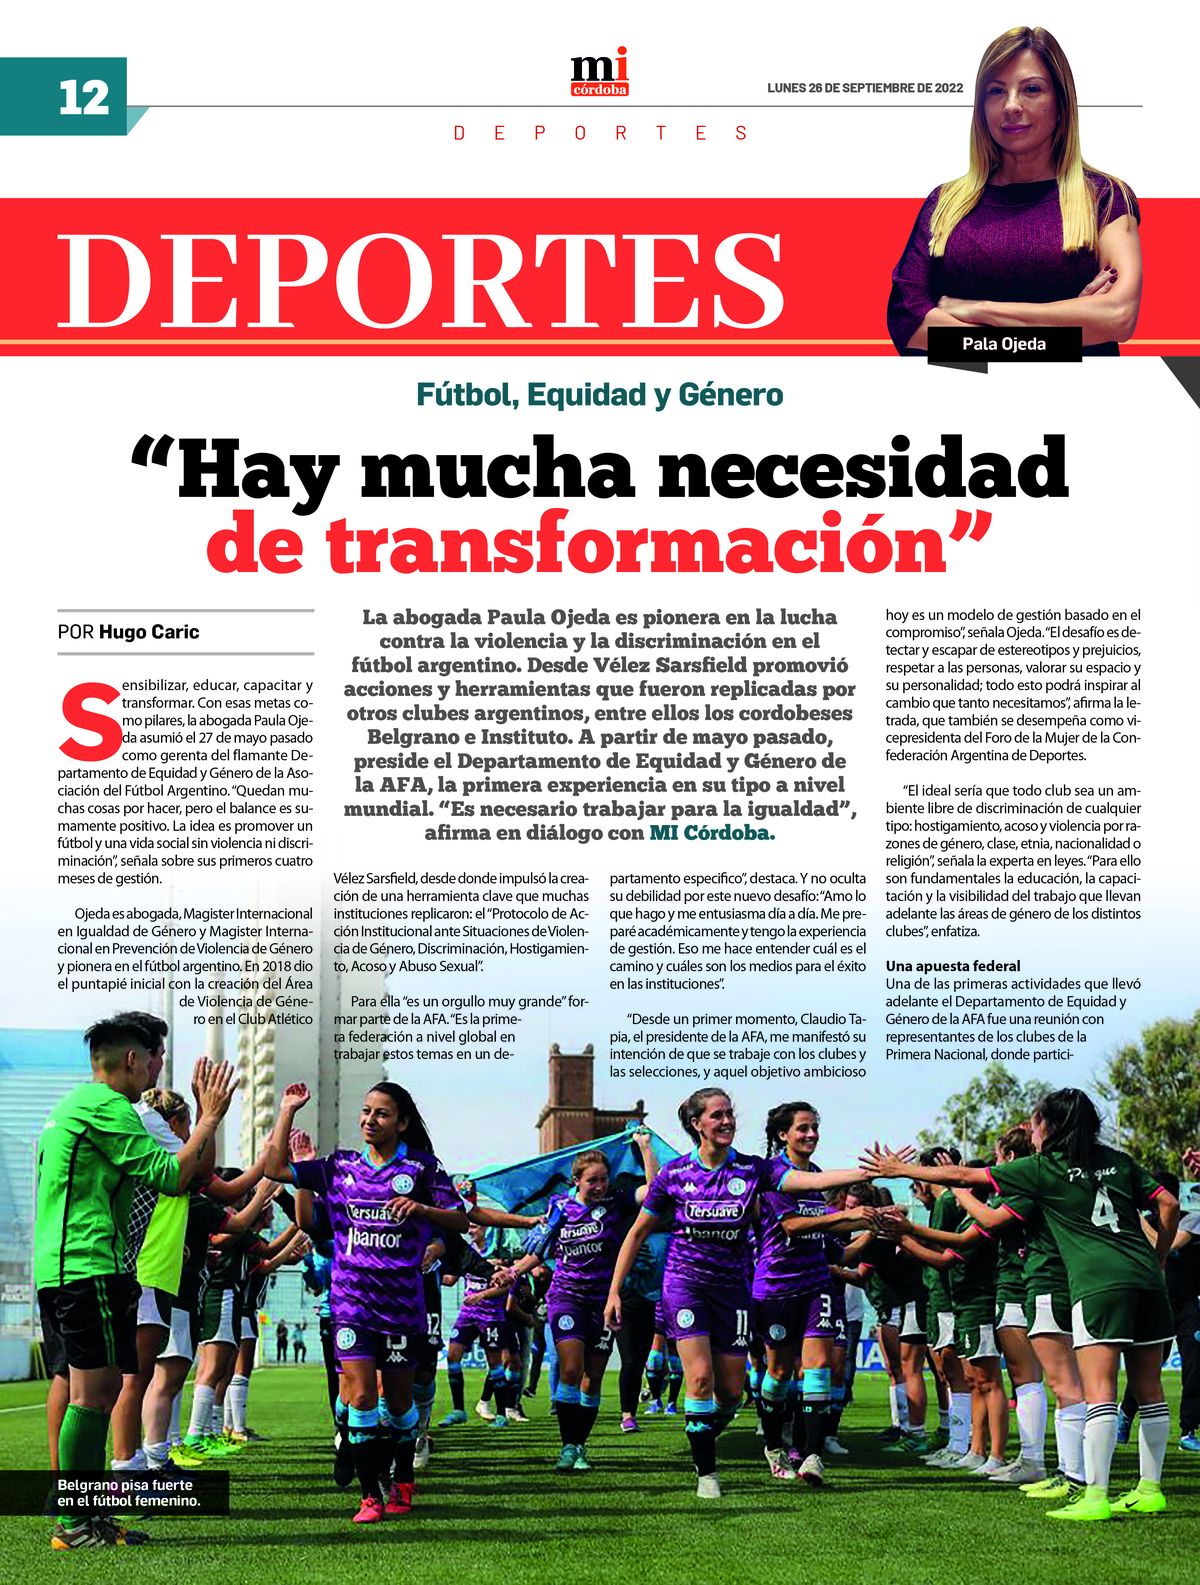 Ya circula la 28va edición del semanario Marca Informativa Córdoba